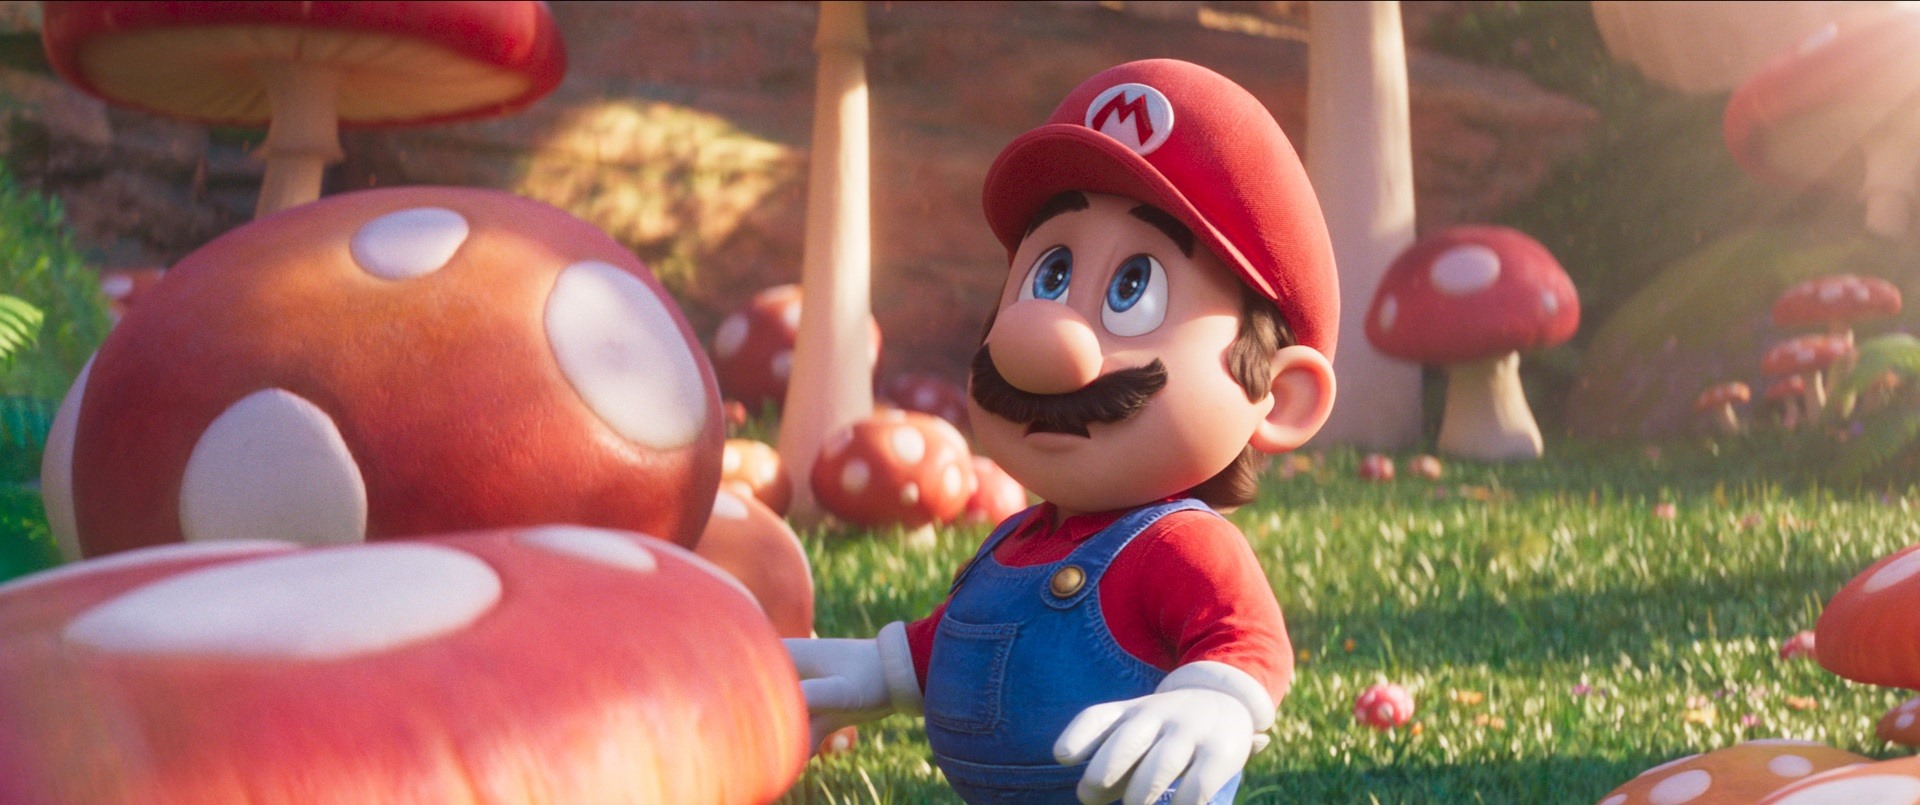 Bom tấn Super Mario hé lộ nhiều tình tiết mới